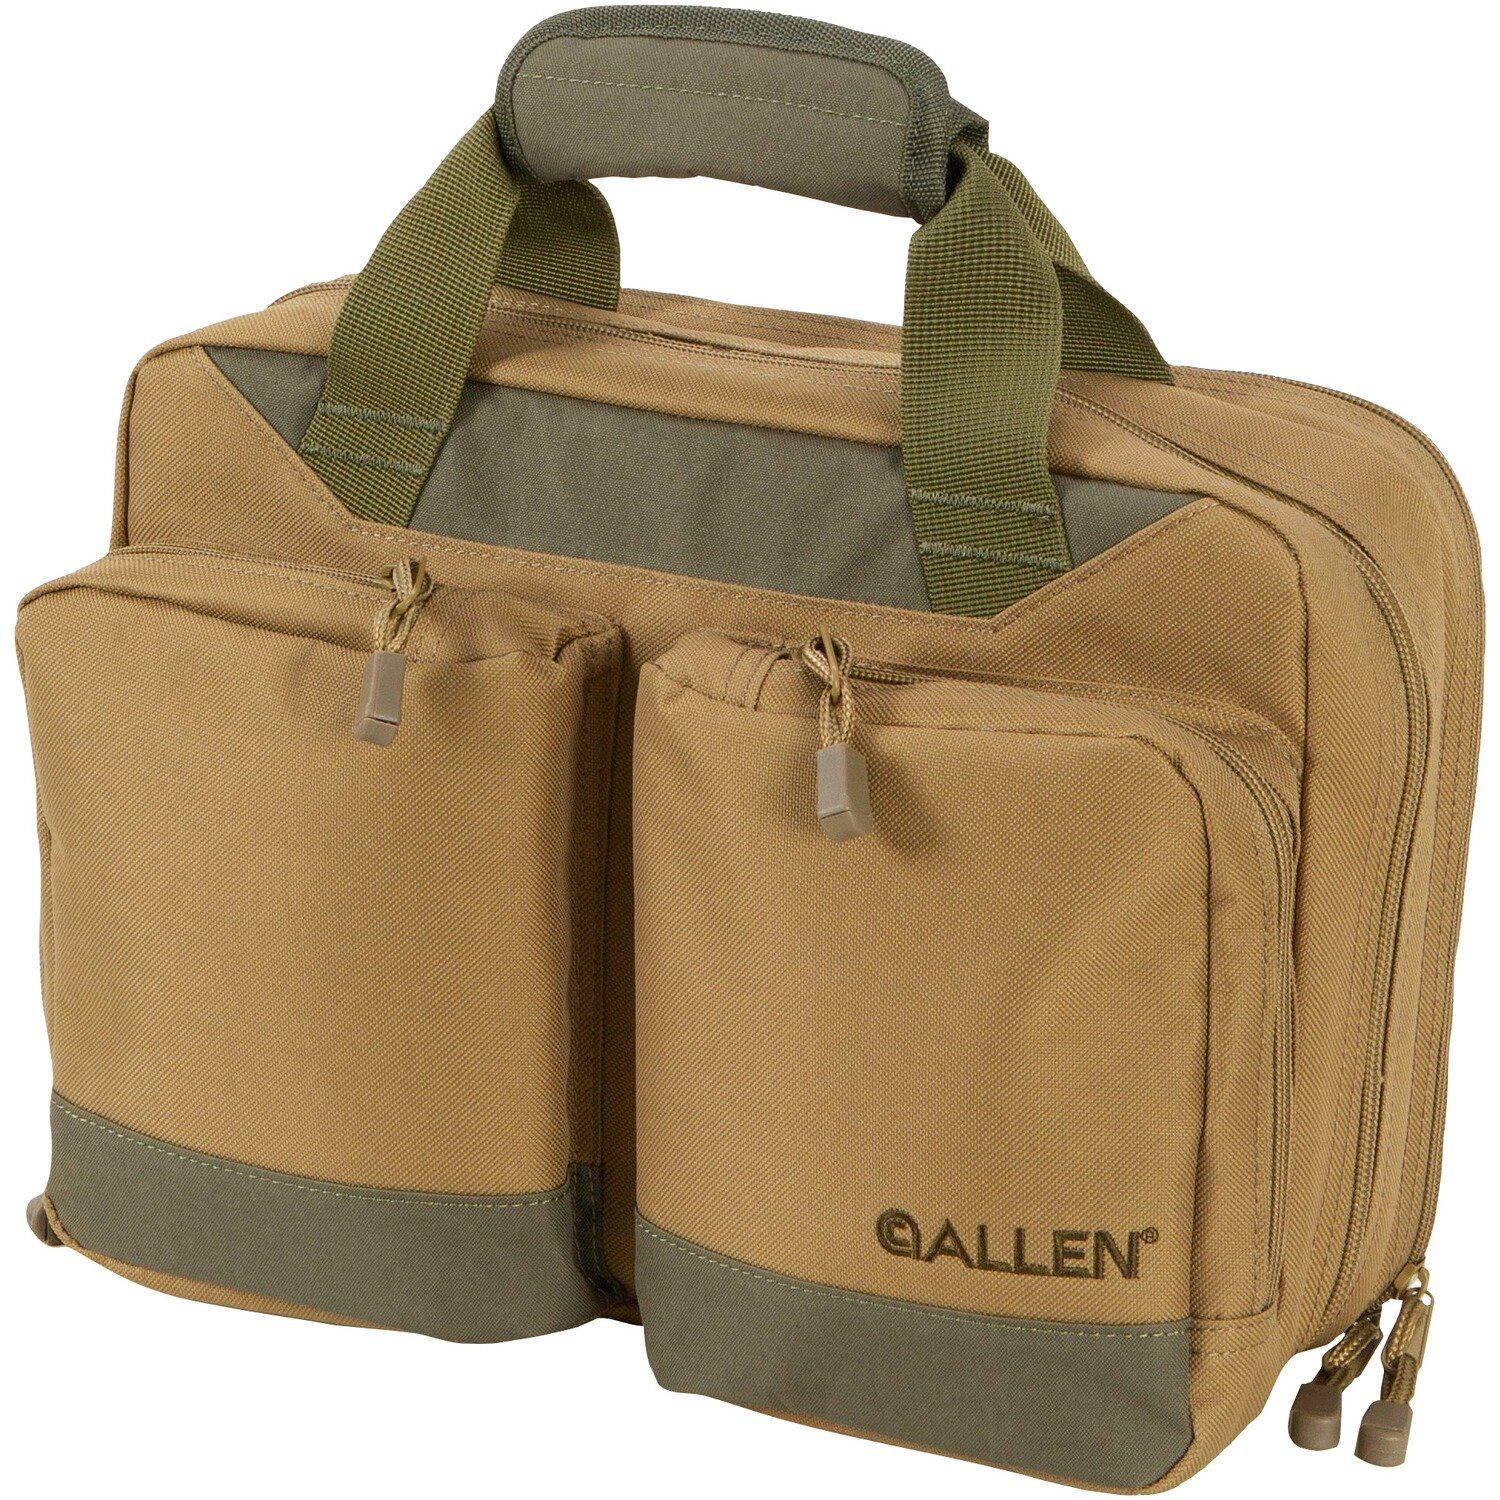 Allen Sporttasche Range Bag Double Attache